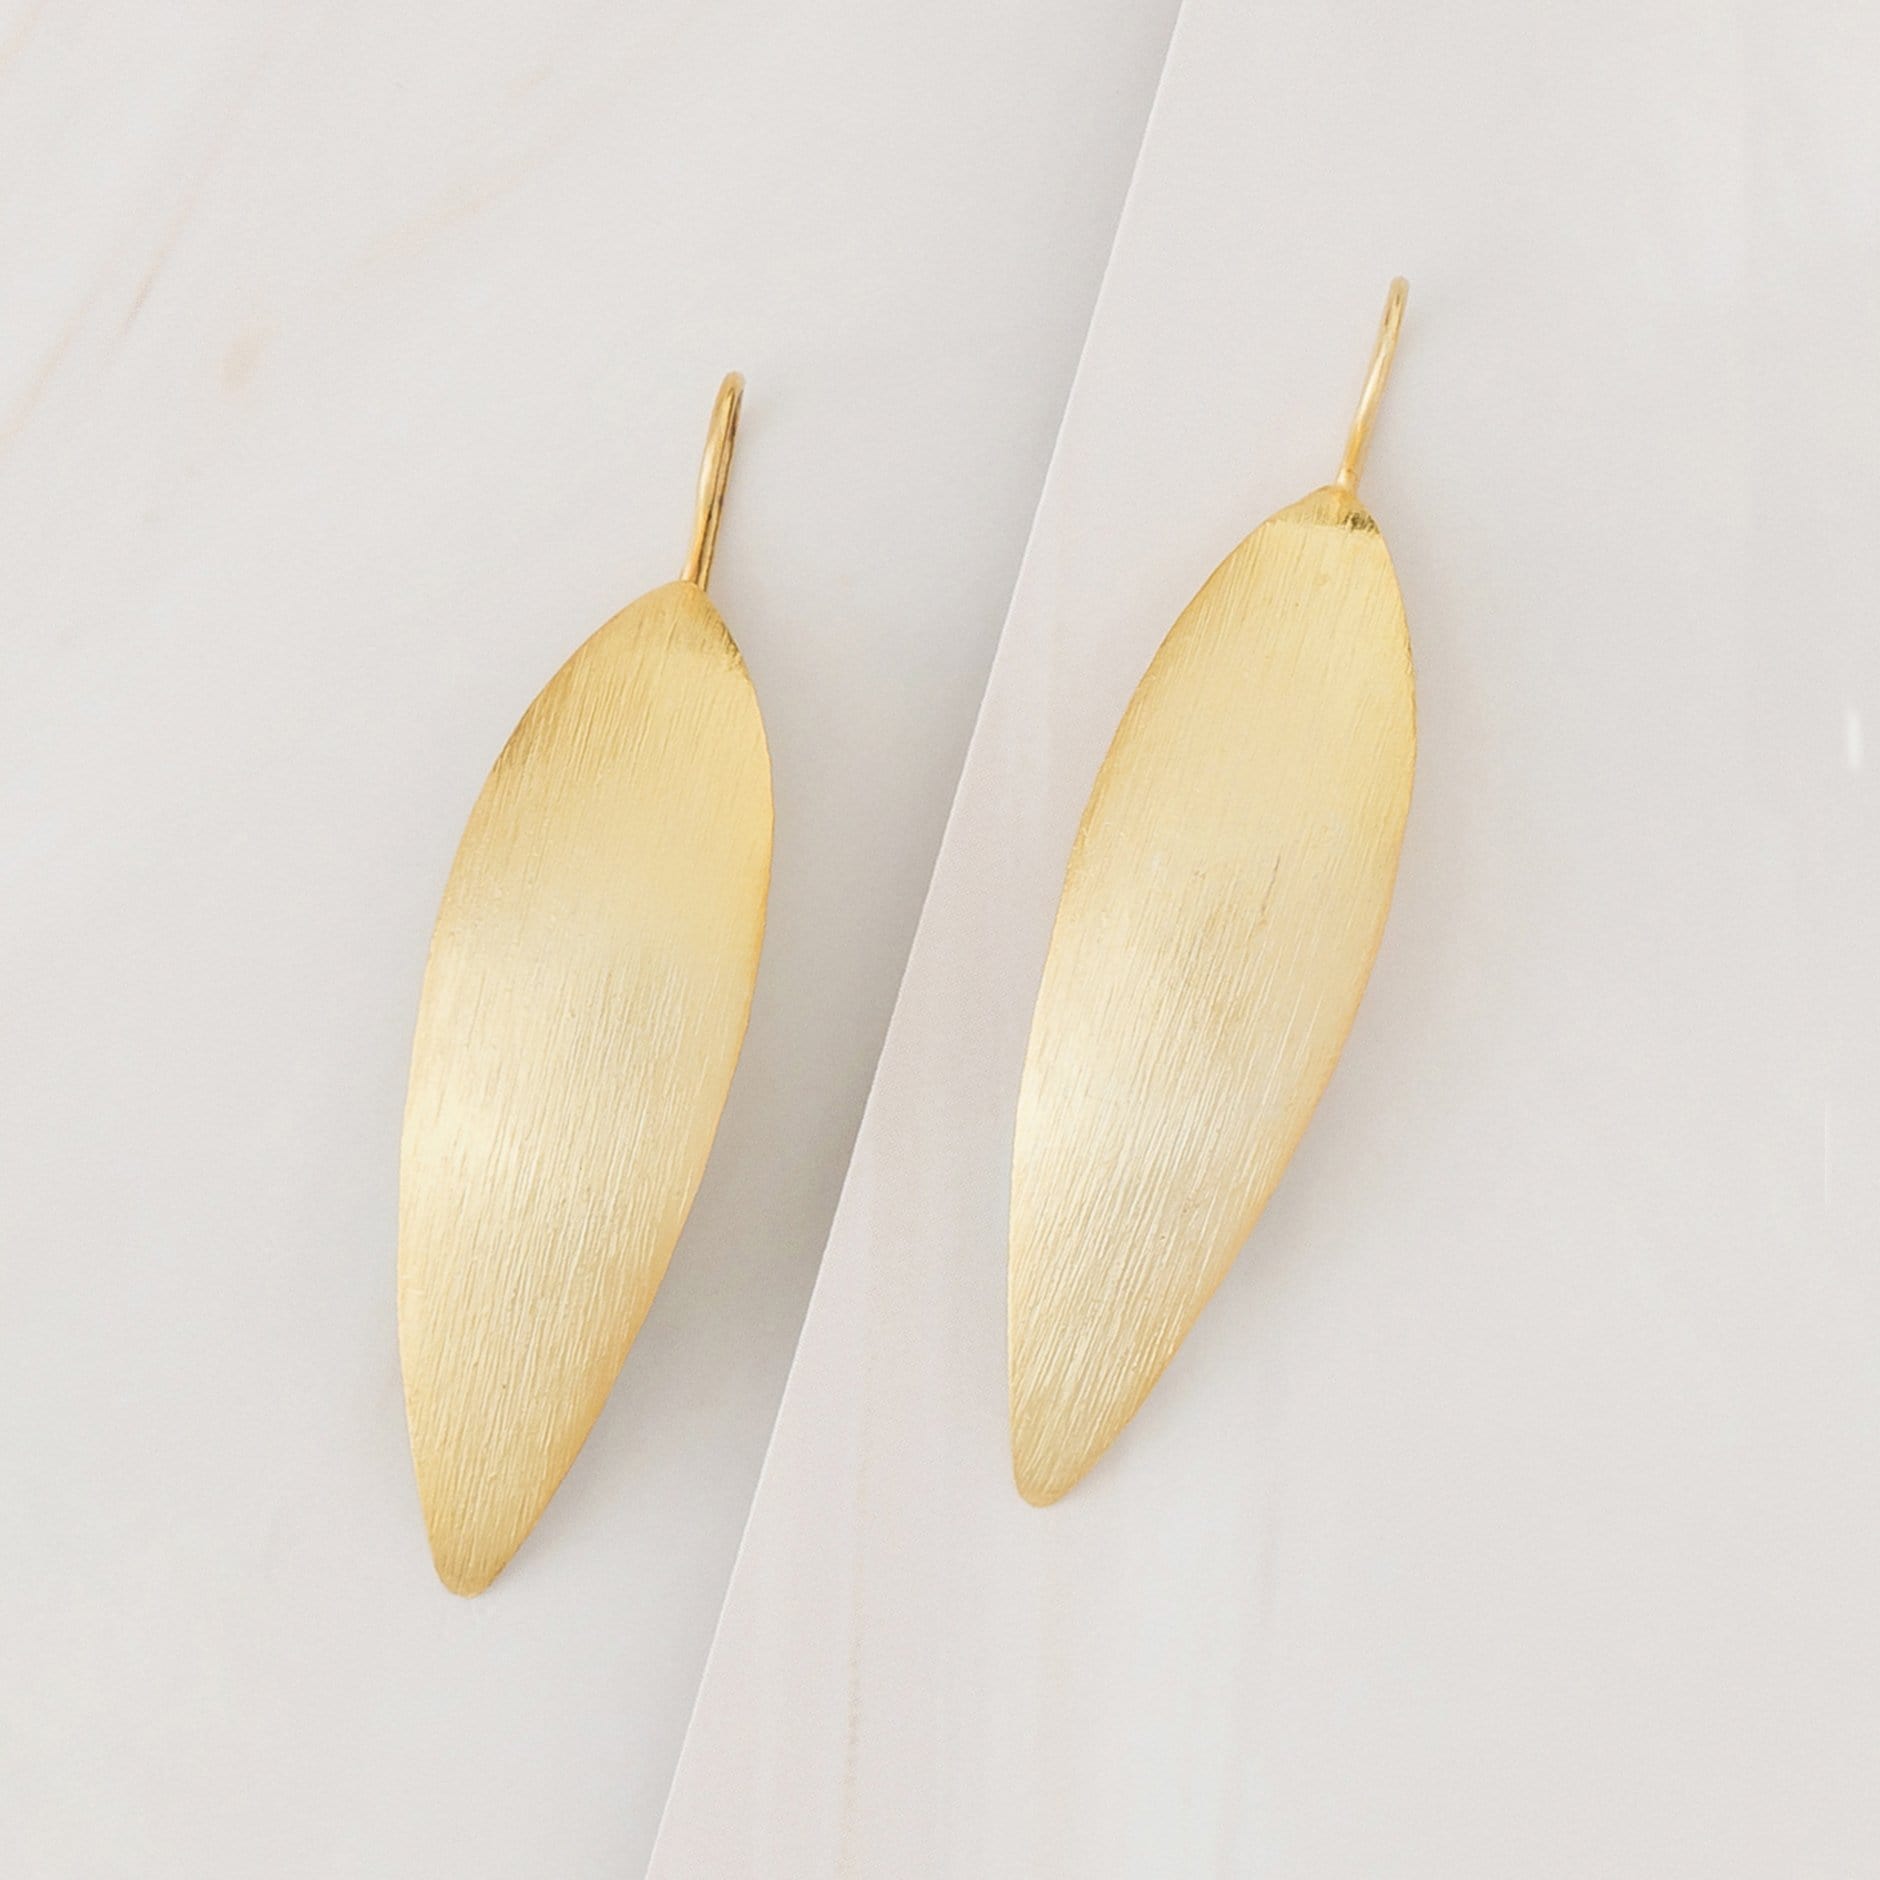 Emblem Jewelry Earrings Gold Tone Winged Spade Statement Hook Earrings